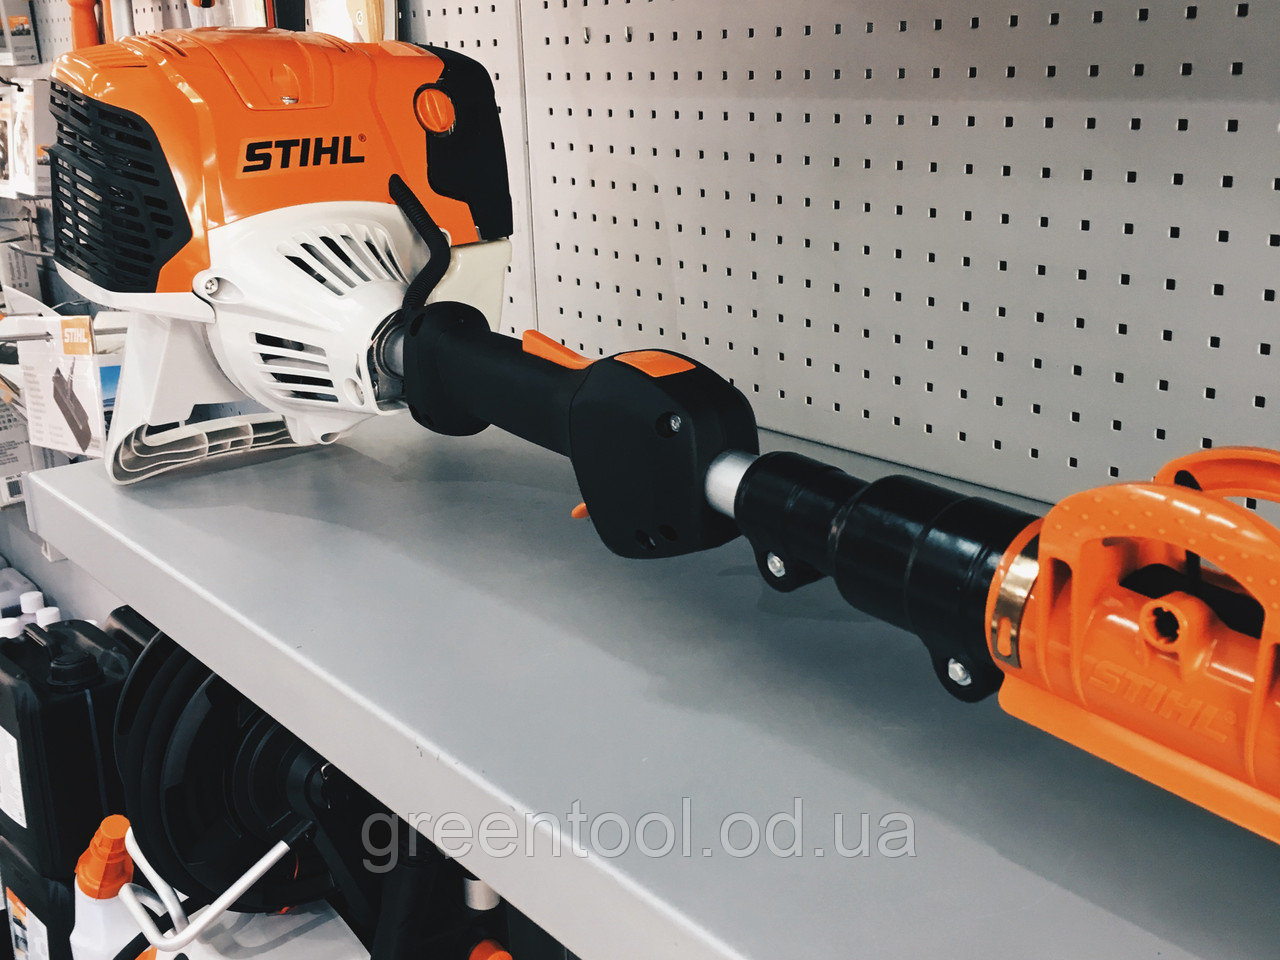 Высоторез stihl ht 131 с двигателем stihl 4-mix — мощный специалист по уходу за кронами деревьев | полезные статьи